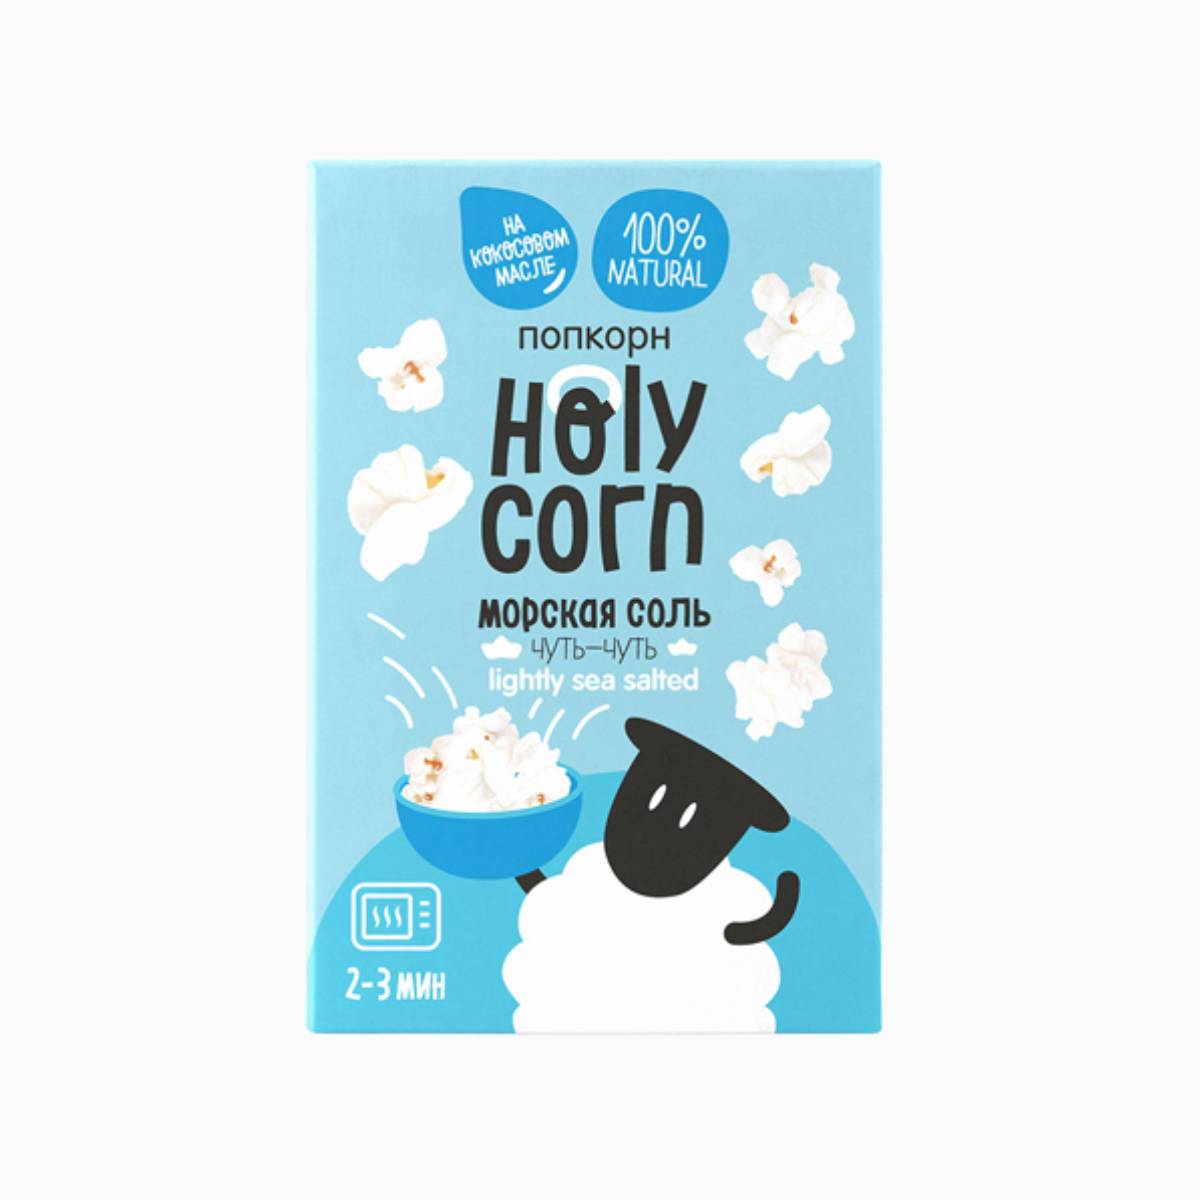 Попкорн для СВЧ Морская соль, Holy Corn